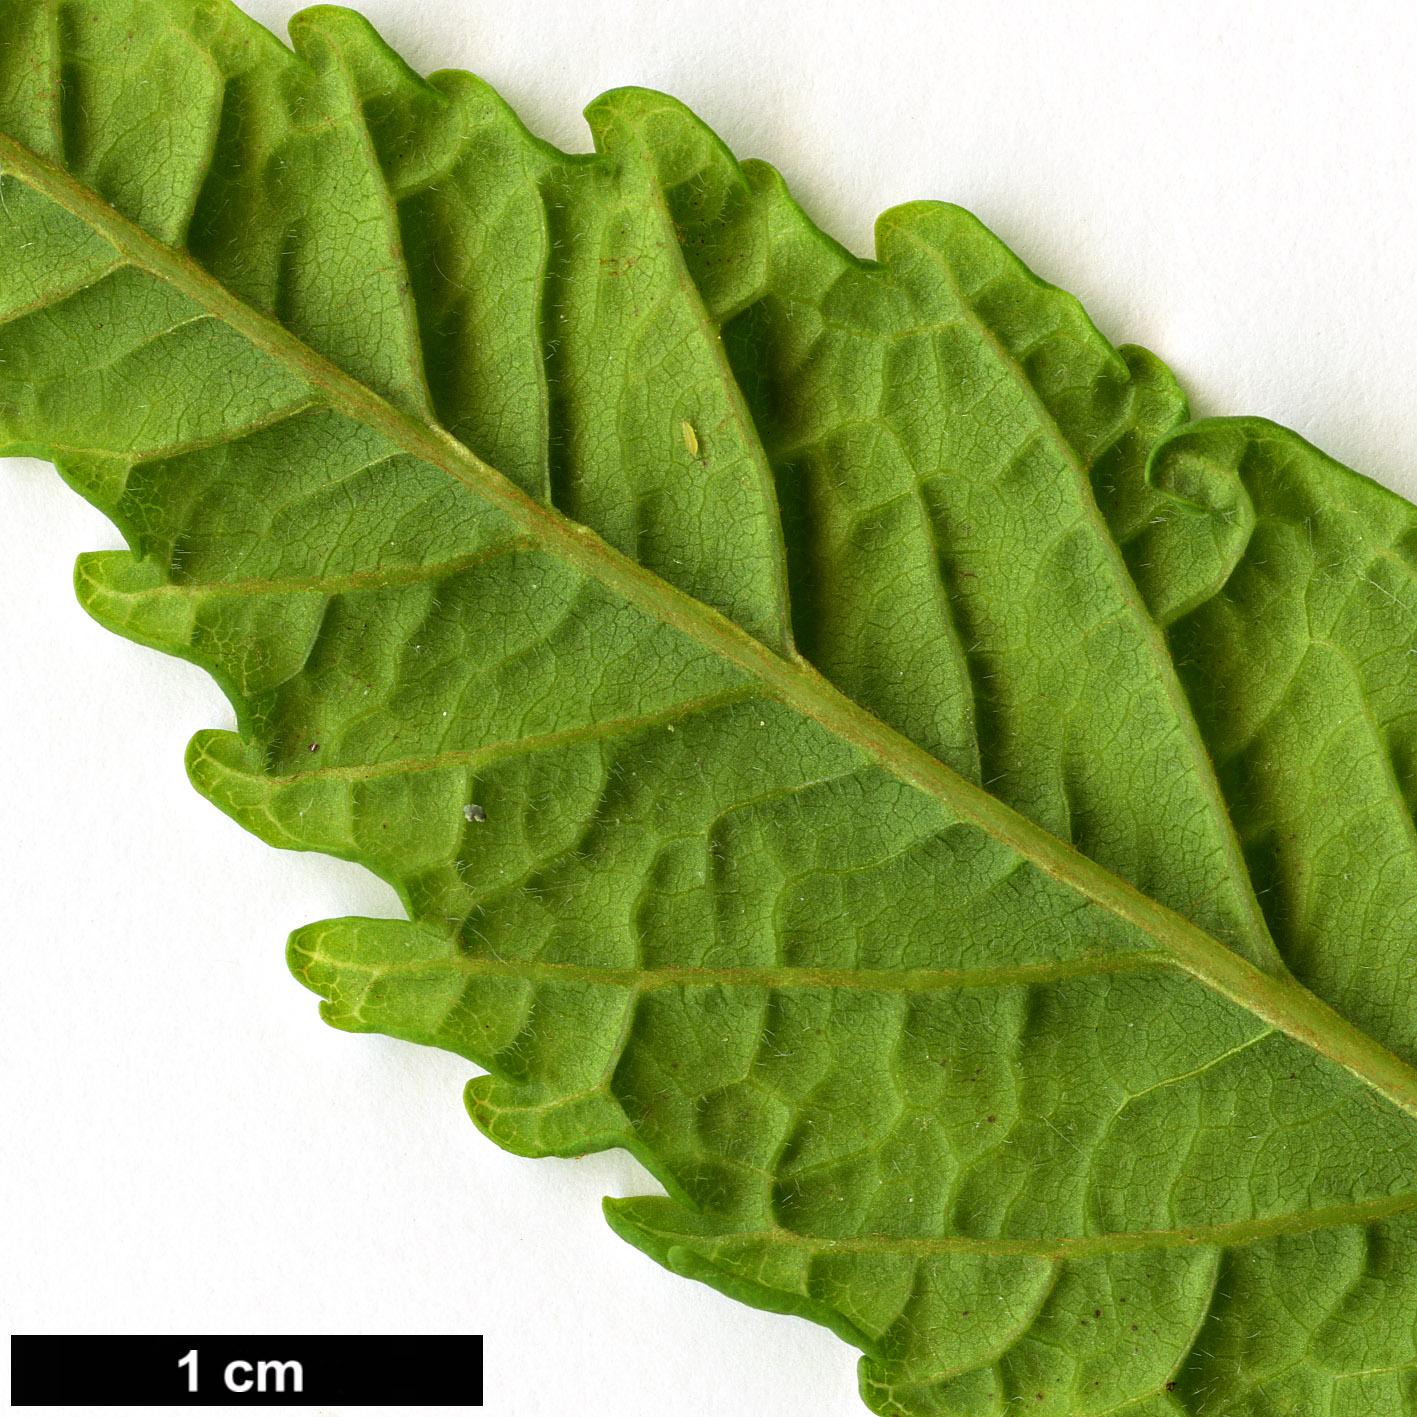 High resolution image: Family: Sapindaceae - Genus: Aesculus - Taxon: hippocastanum - SpeciesSub: 'Digitata'